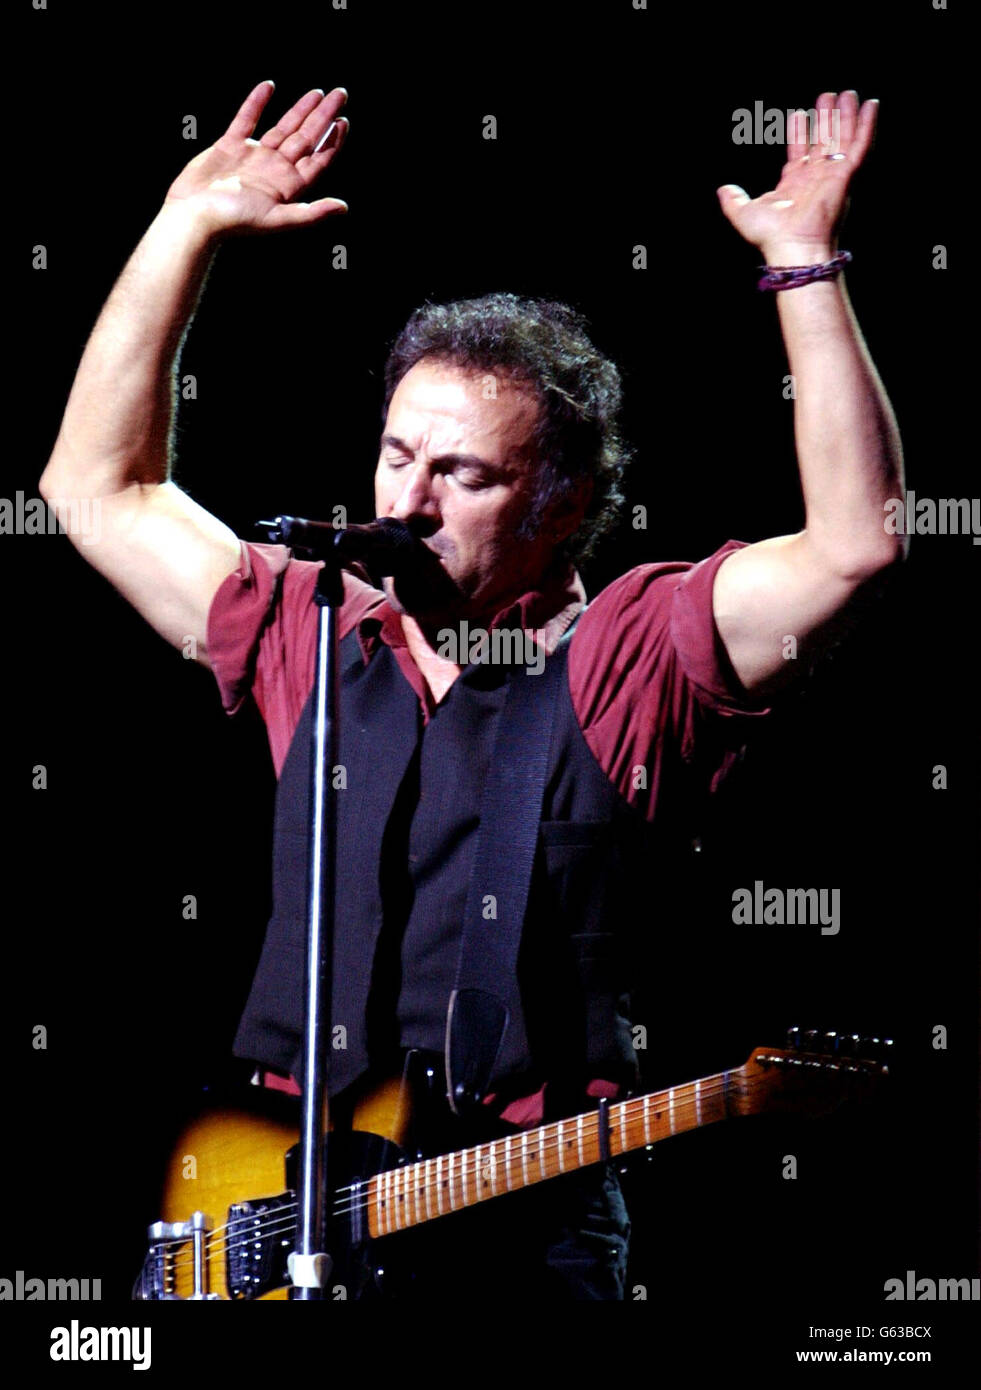 La star rock americana Bruce Springsteen ha suonato sul palco durante un concerto unico a Londra alla Wembley Arena come parte del suo tour mondiale dopo l'uscita del suo primo album per otto anni "The Rising". Foto Stock